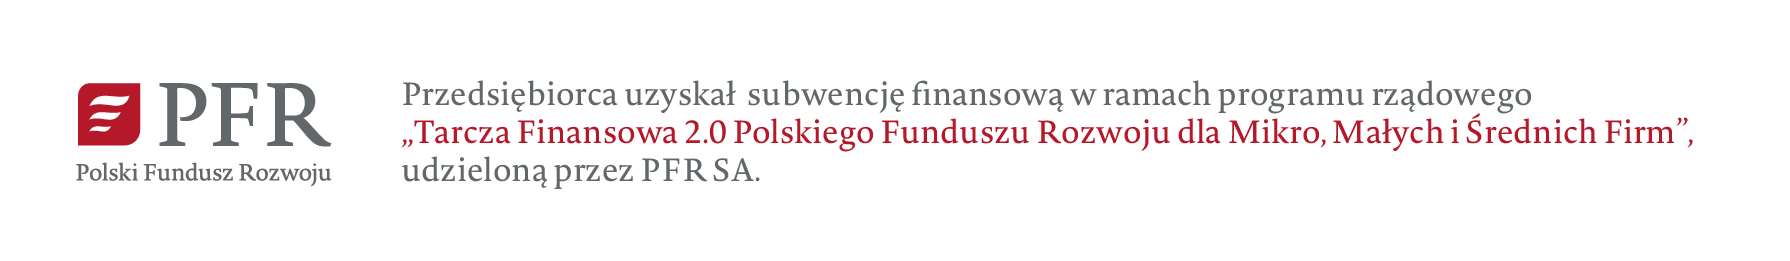 PFR - Polski Fundusz Rozwoju